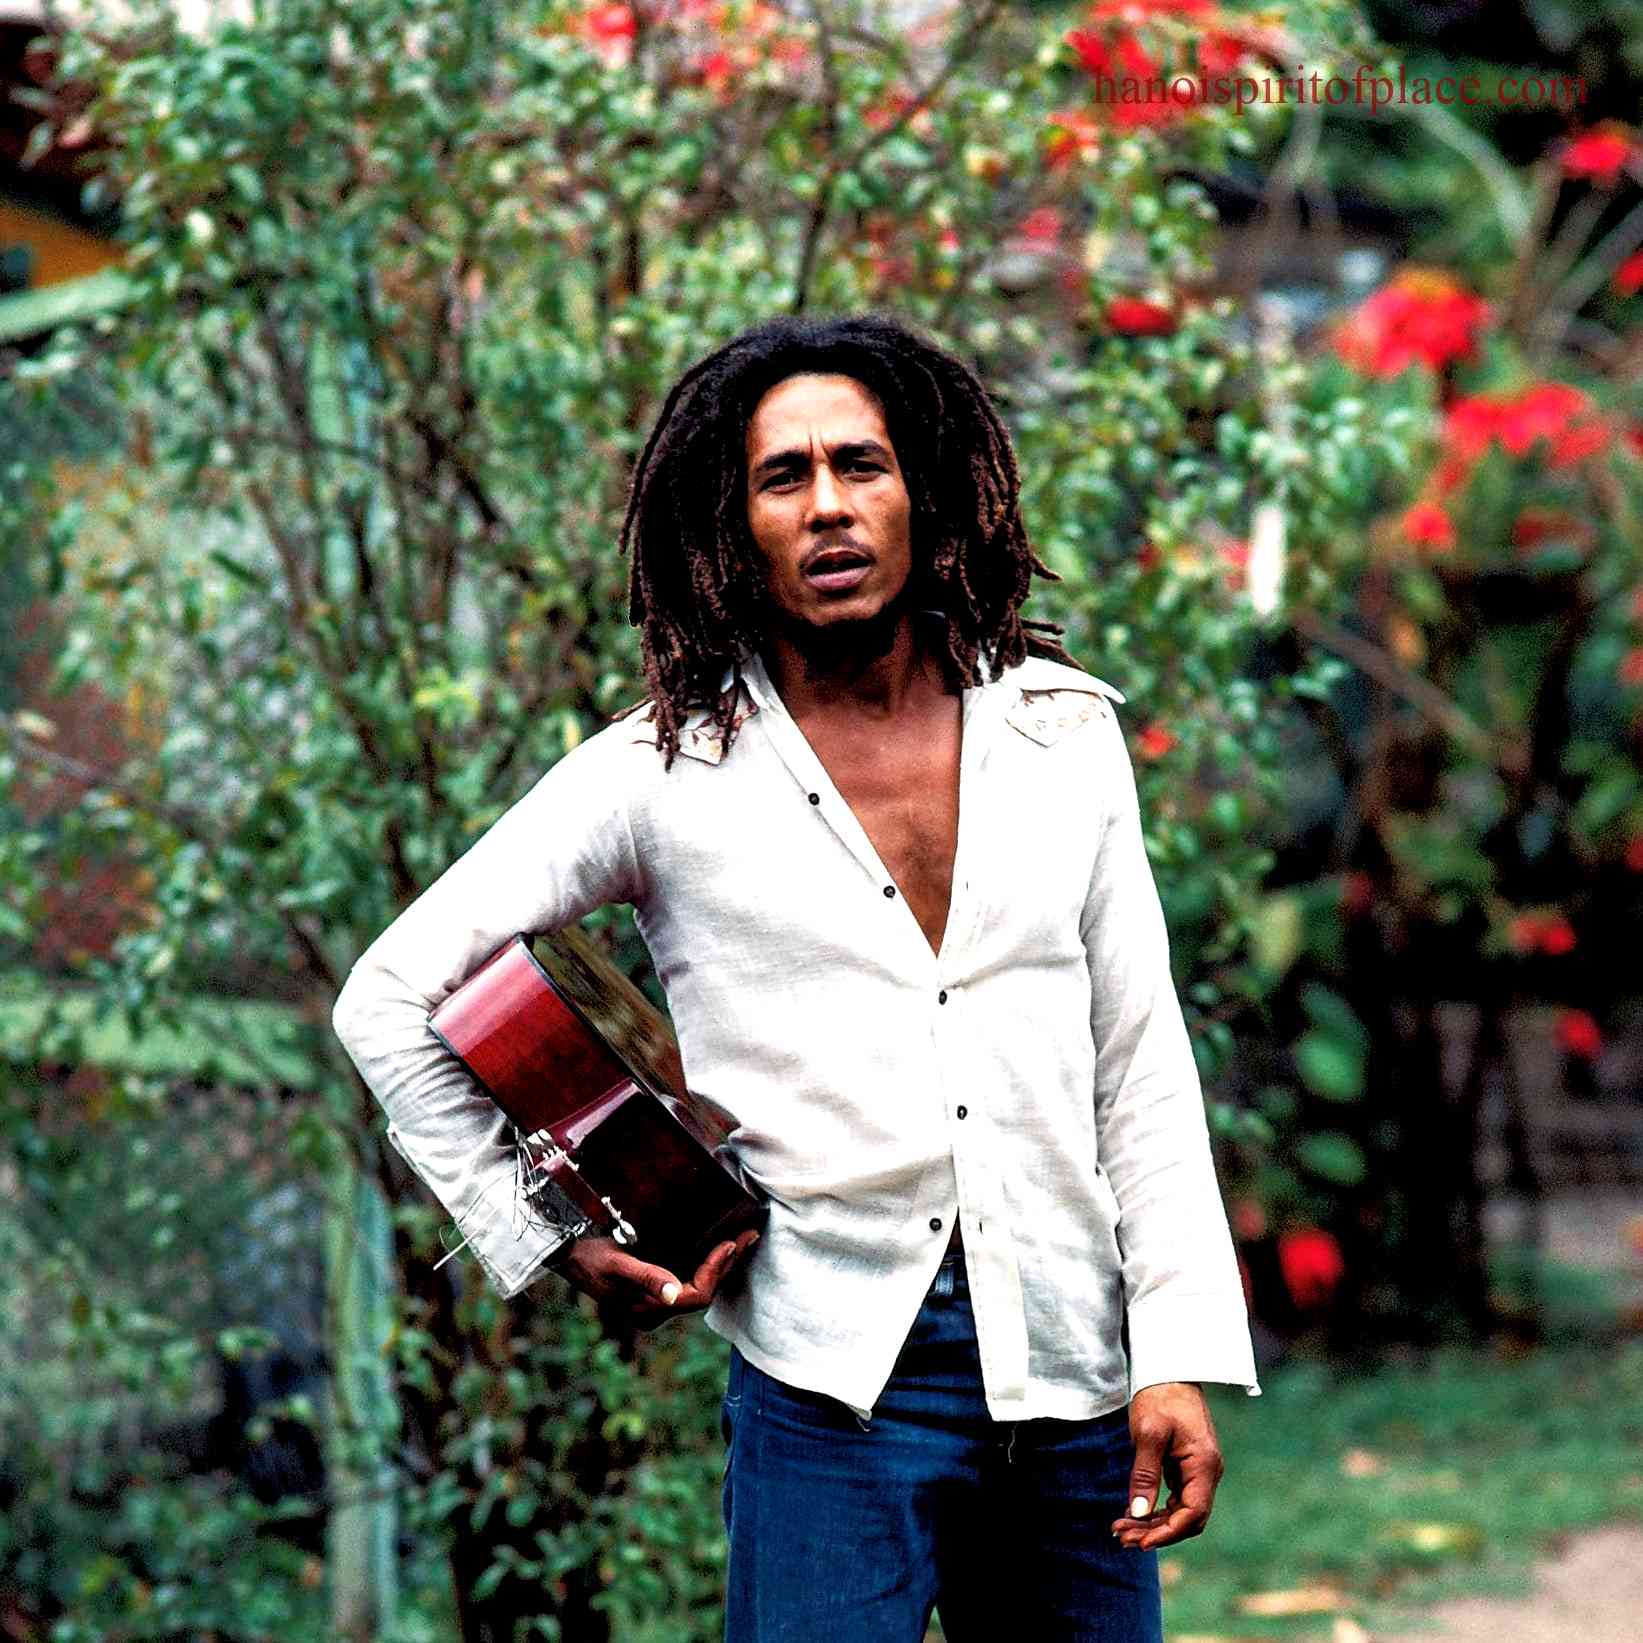 Brief background on Bob Marley